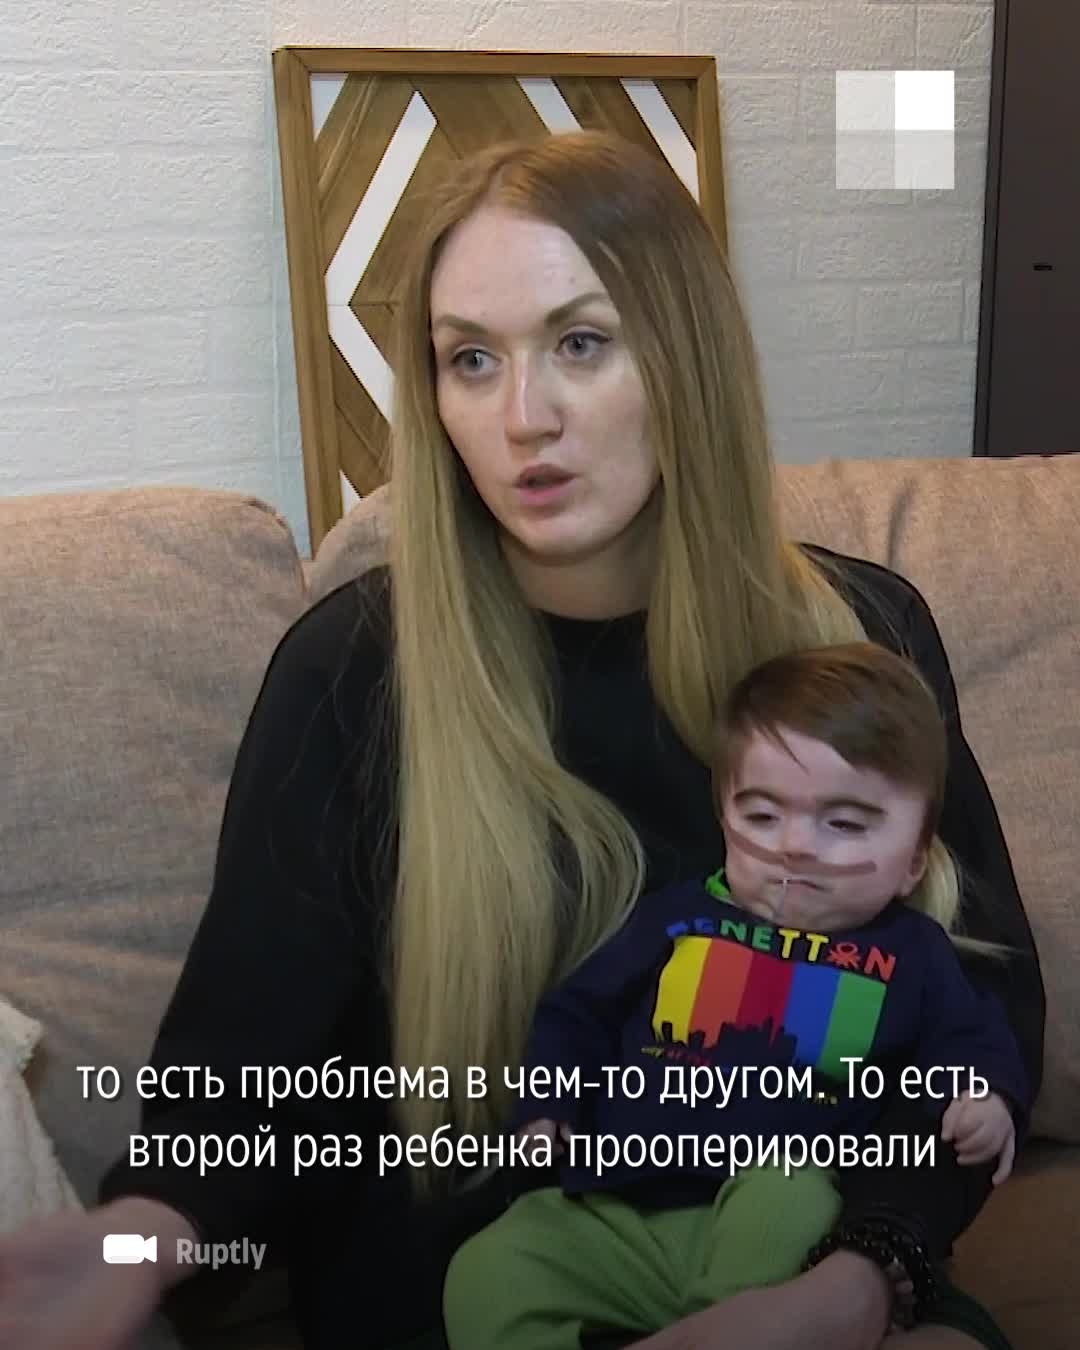 В Новосибирске родился мальчик с синдромом Корнелии де Ланге, он навсегда останется ребенком - 6 июля 2022 - НГС